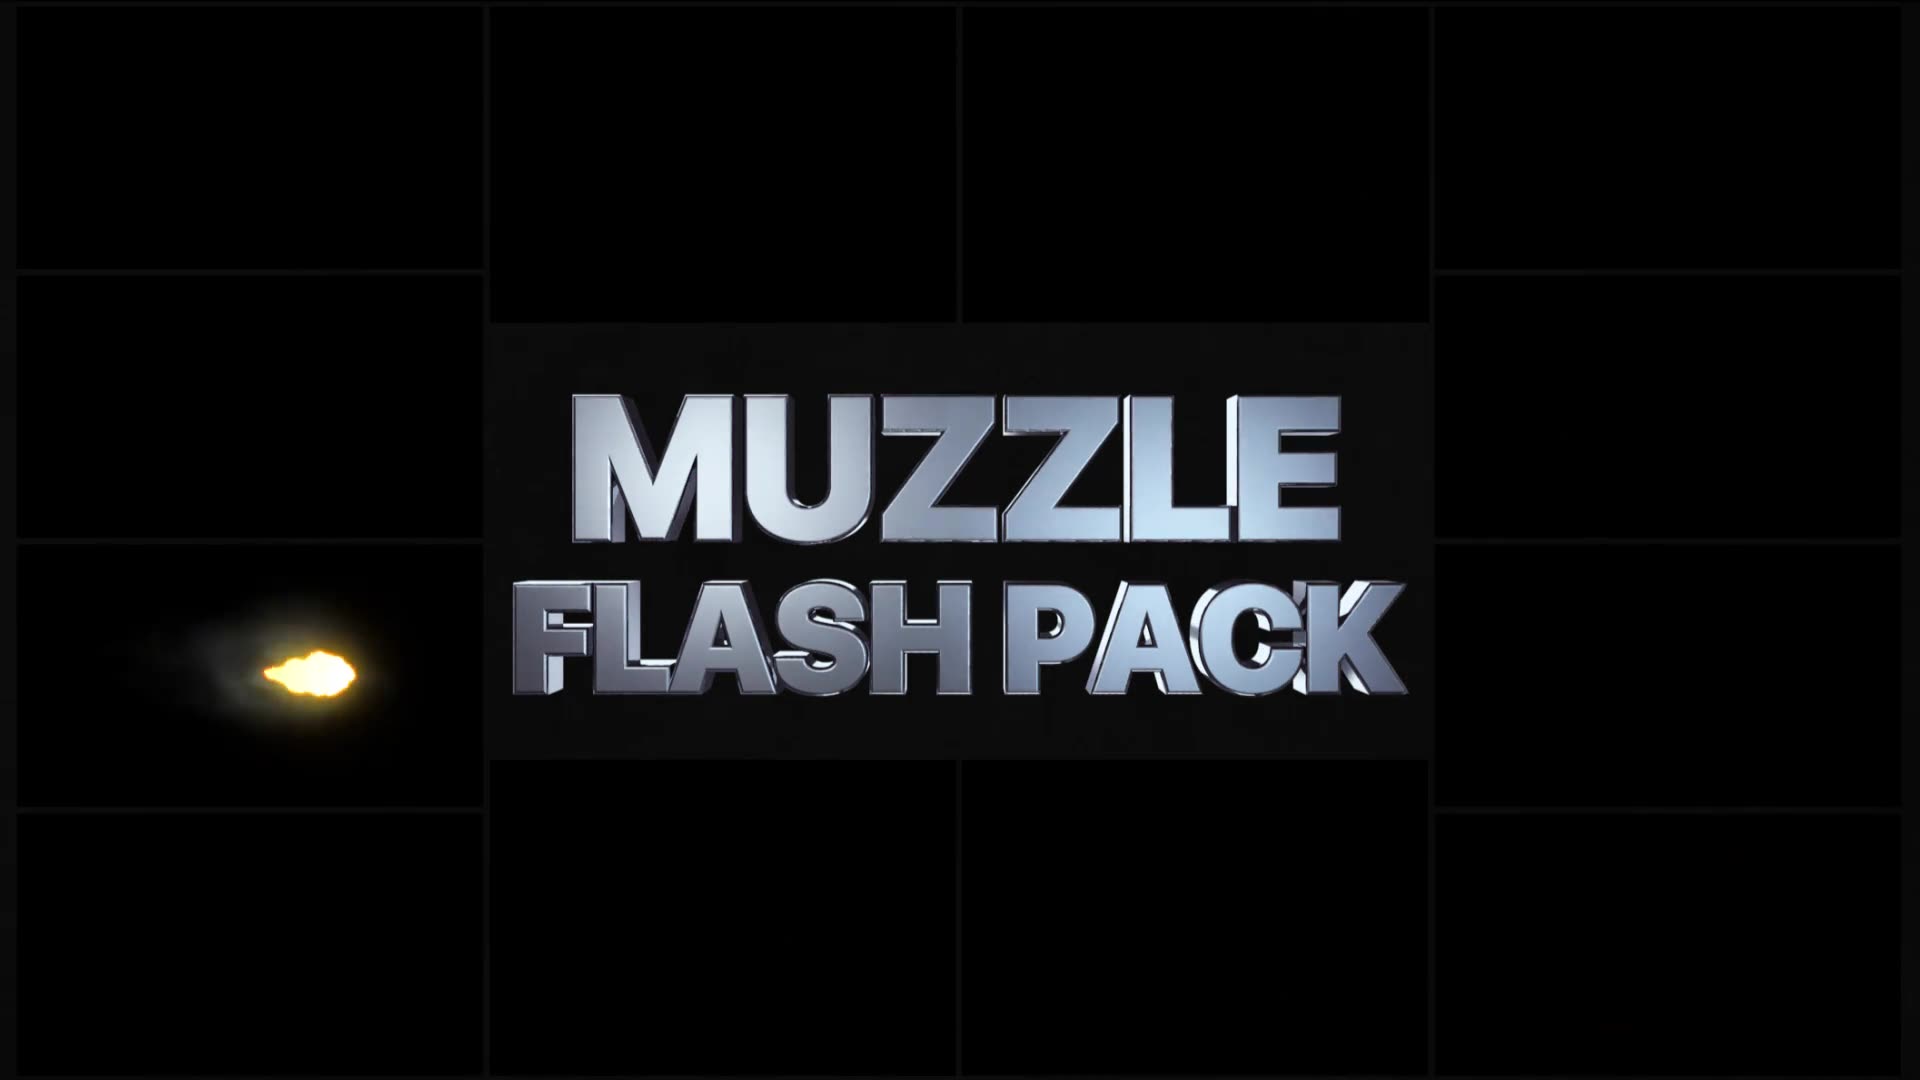 Muzzle Flash Pack 02 | Premiere Pro MOGRT Videohive 30300220 Premiere Pro Image 2